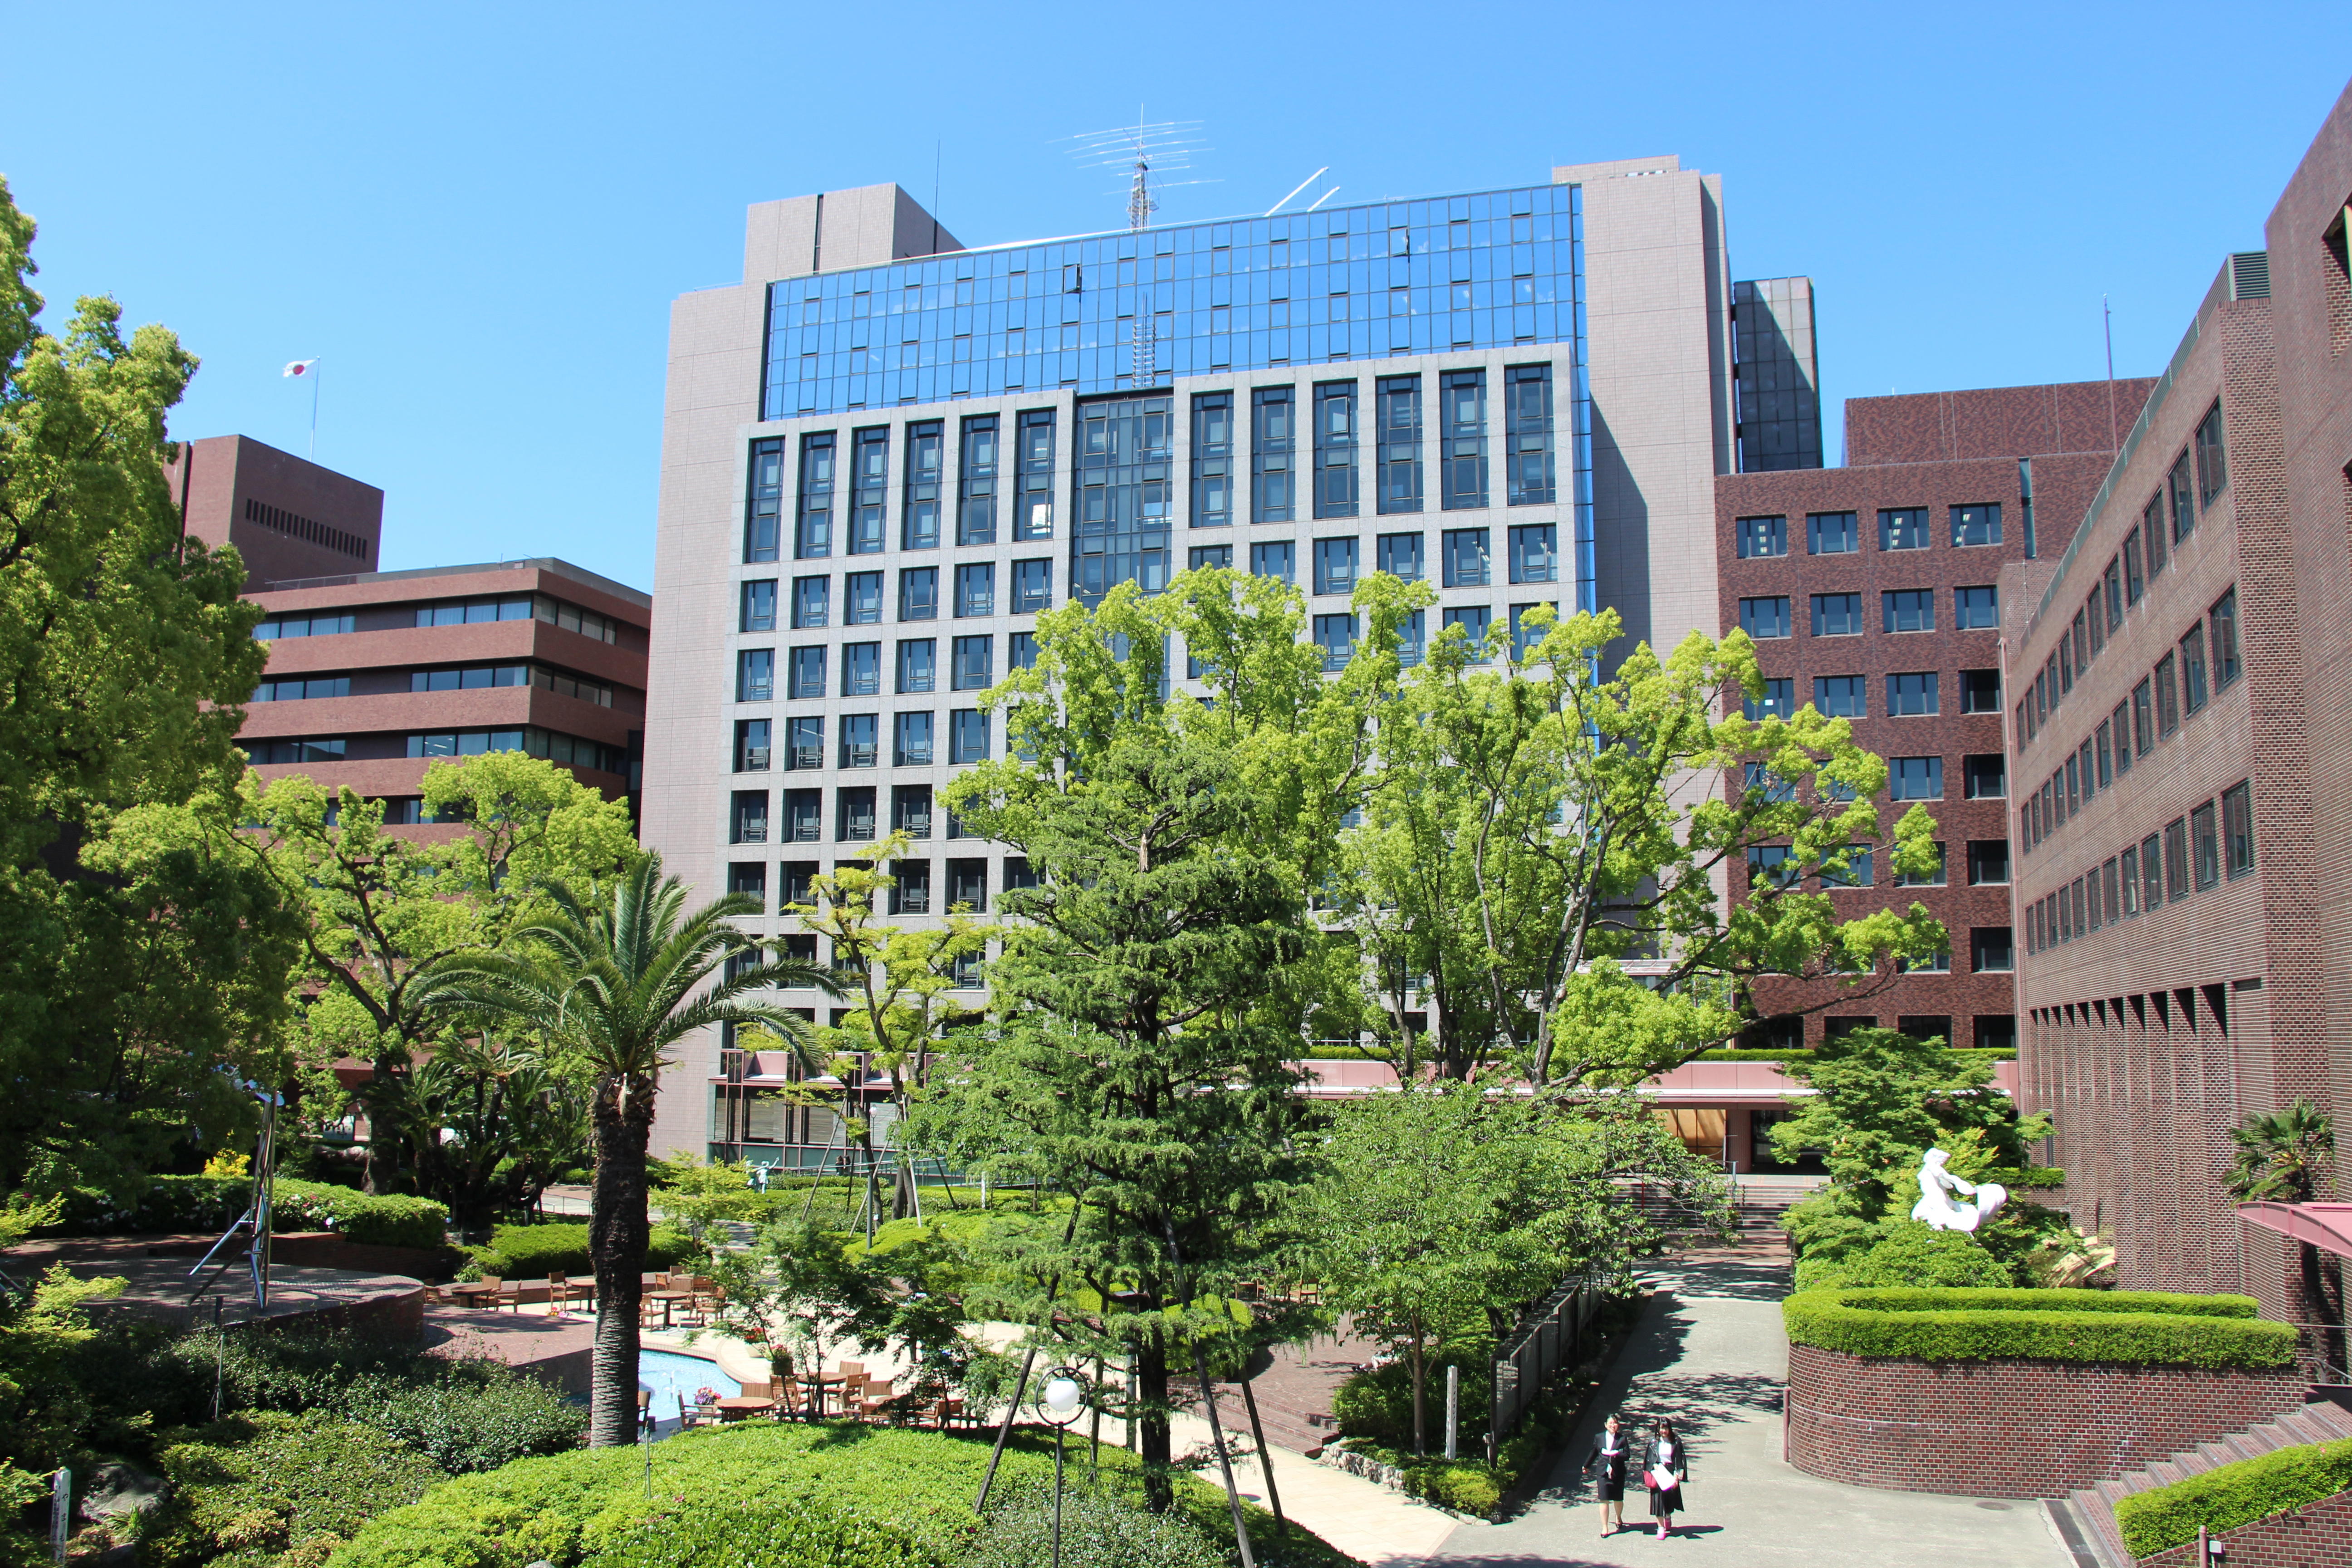 武庫川女子大学附属図書館がAI顔認証入退管理システム「SAFR」を導入 -- 地震や火災など緊急事態の発生時にも滞在状況を即座に確認